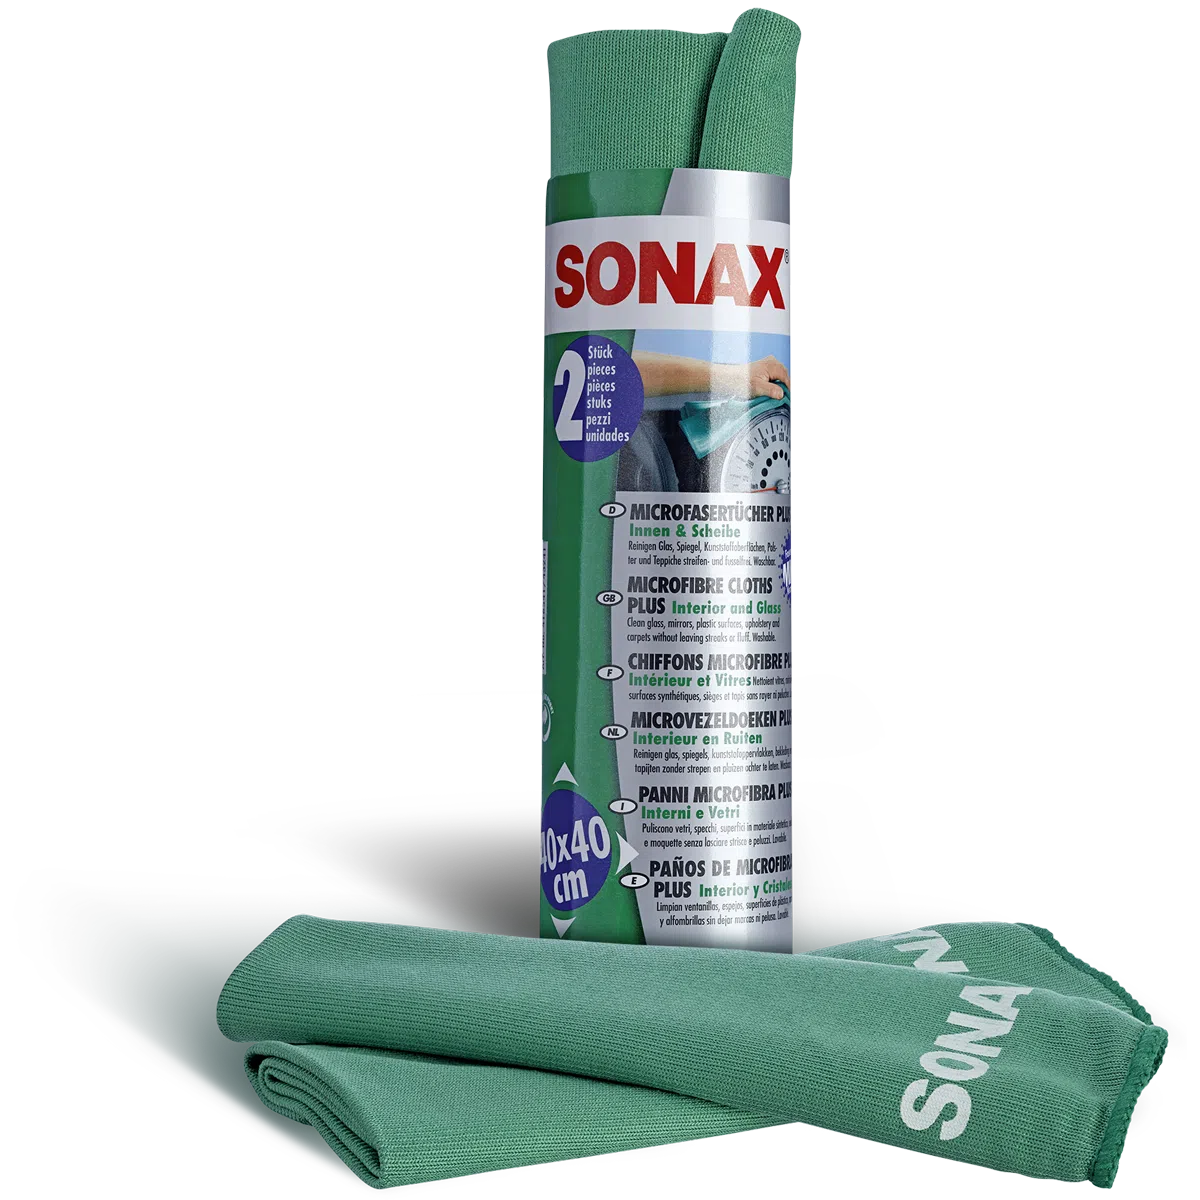 SONAX Microfasertuch PLUS Innen und Scheibe